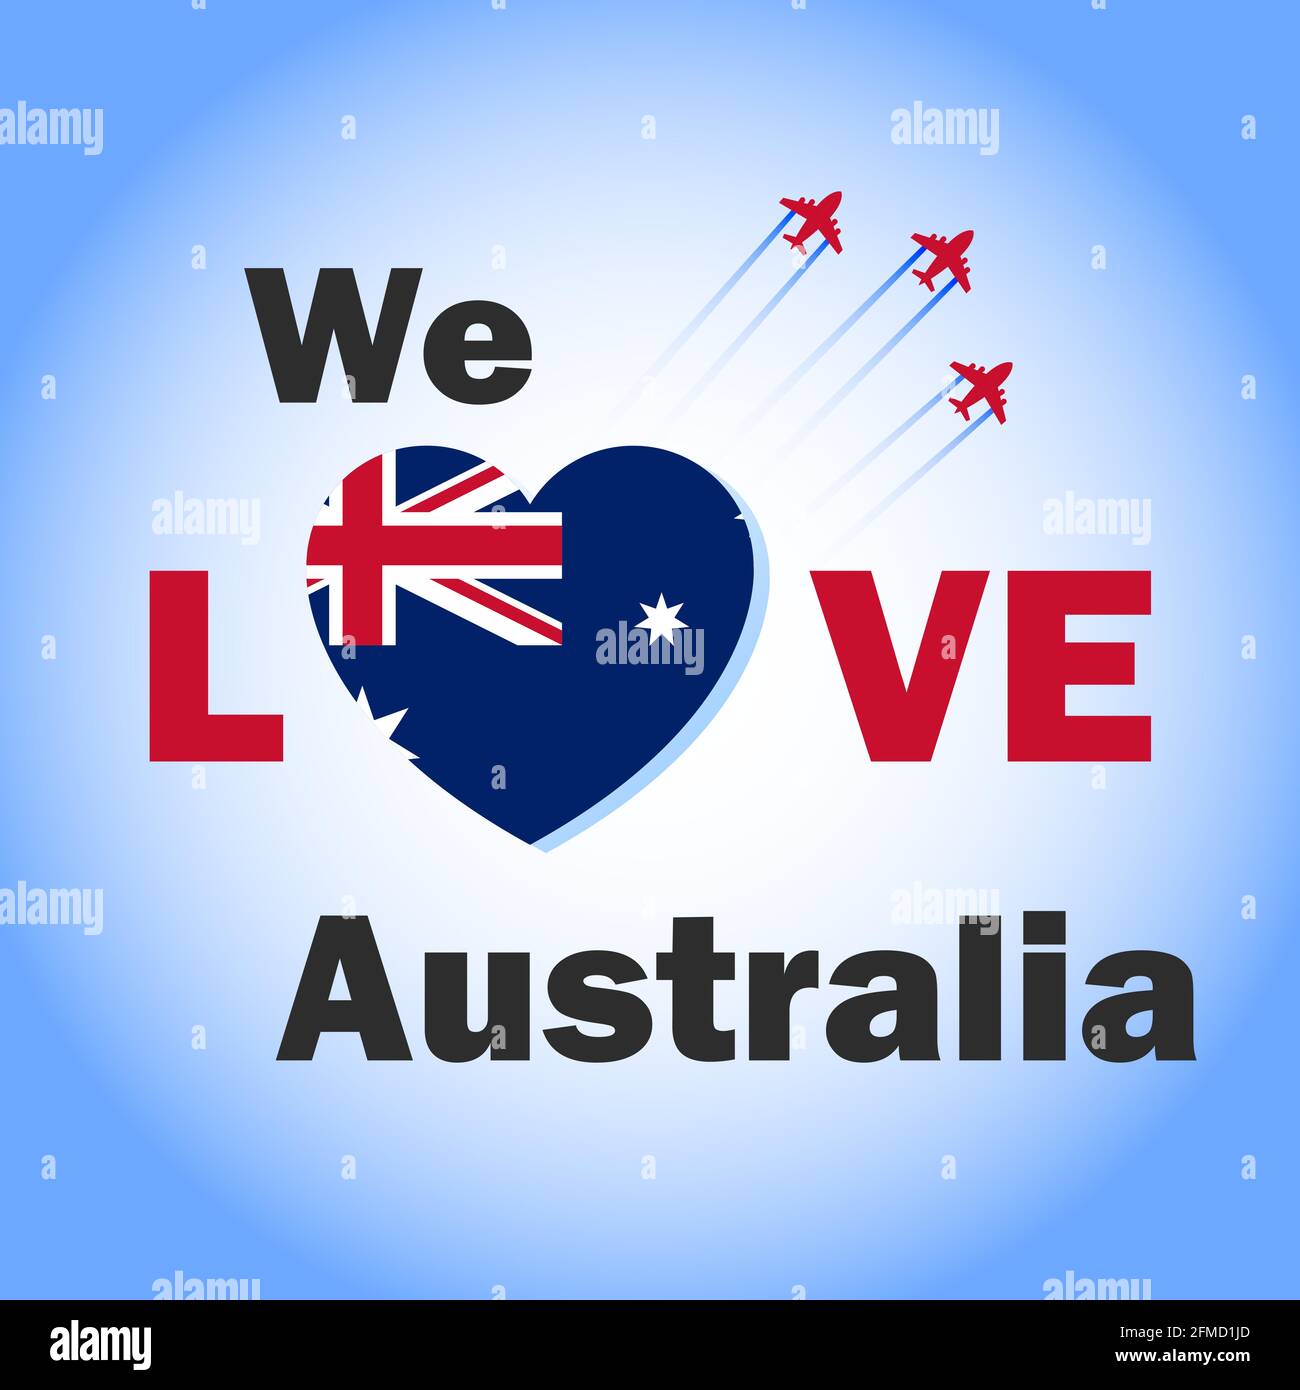 Amiamo il banner australiano con la bandiera australiana a forma di cuore. Australia National Day design creativo con jet da combattimento nel cielo per i social media. Illustrazione Vettoriale